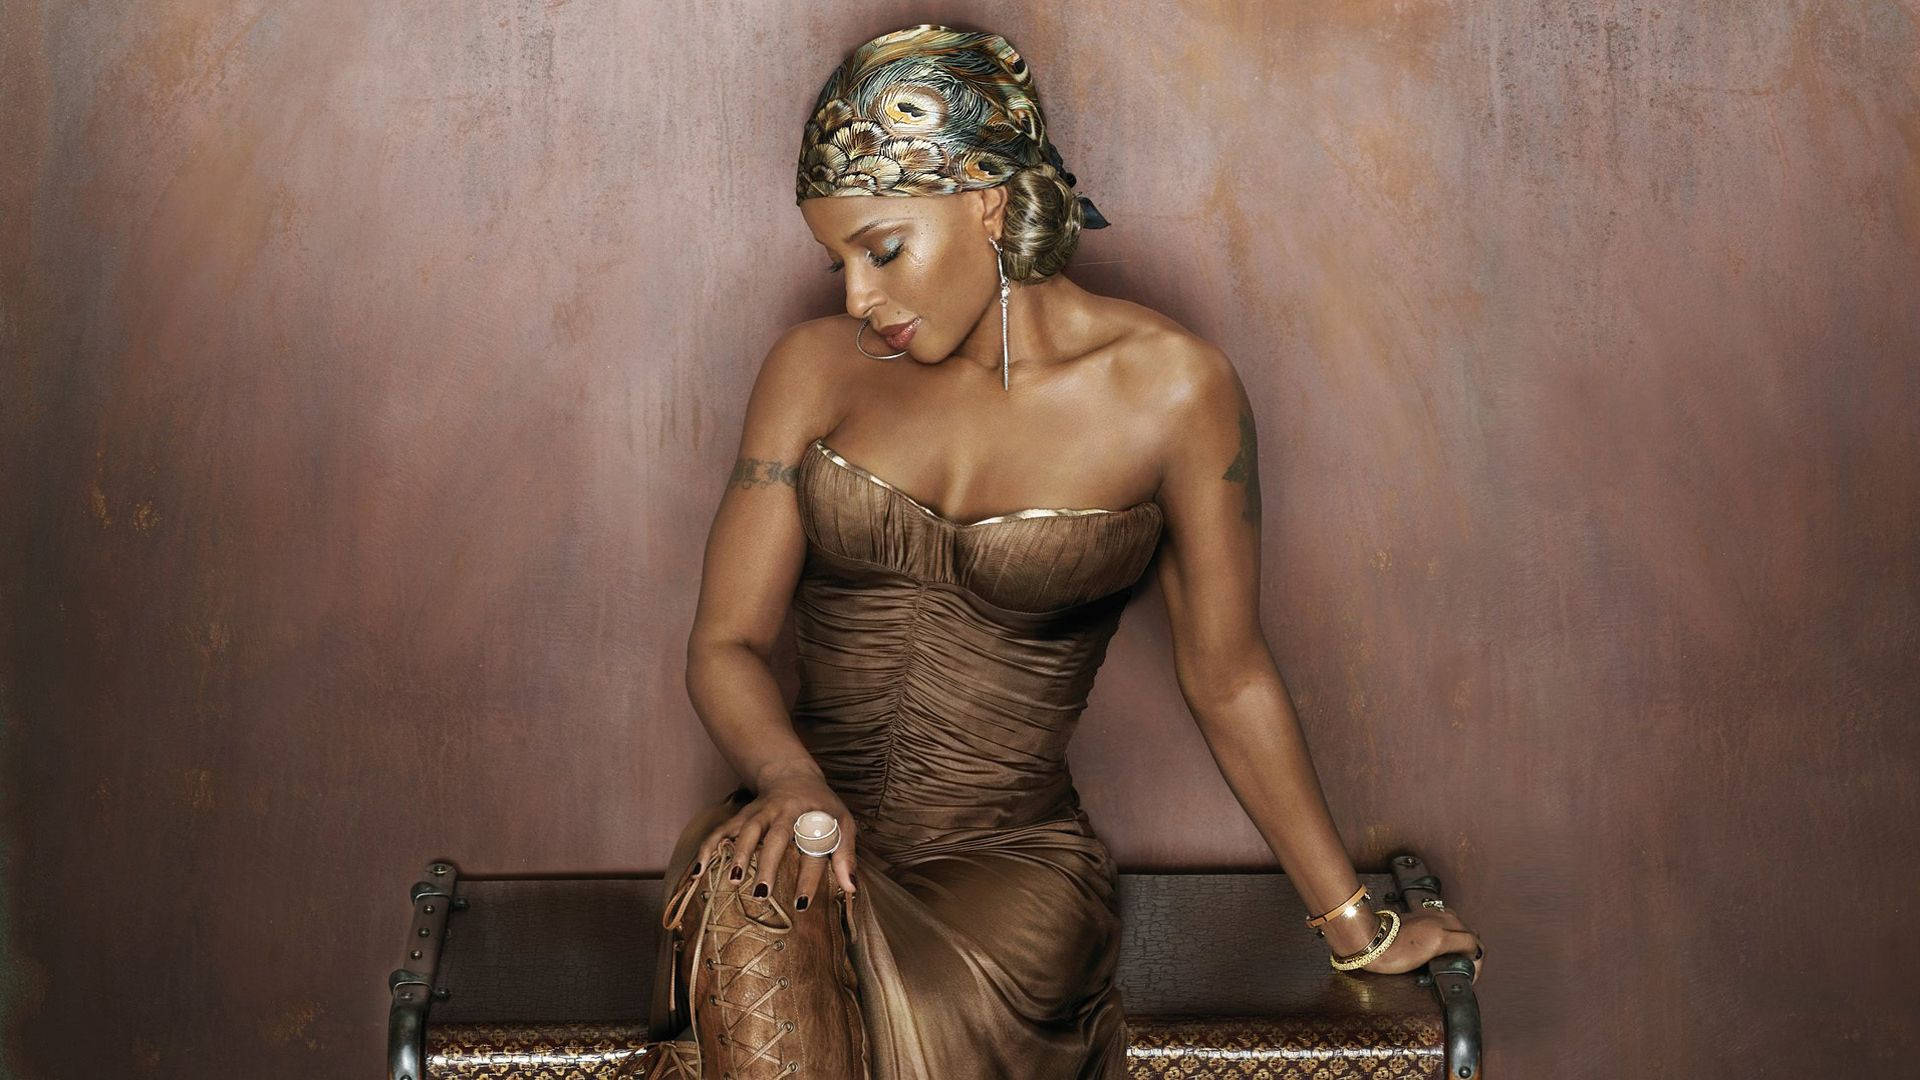 Mary J. Blige In A Dress By Markus Klinko Wallpaper